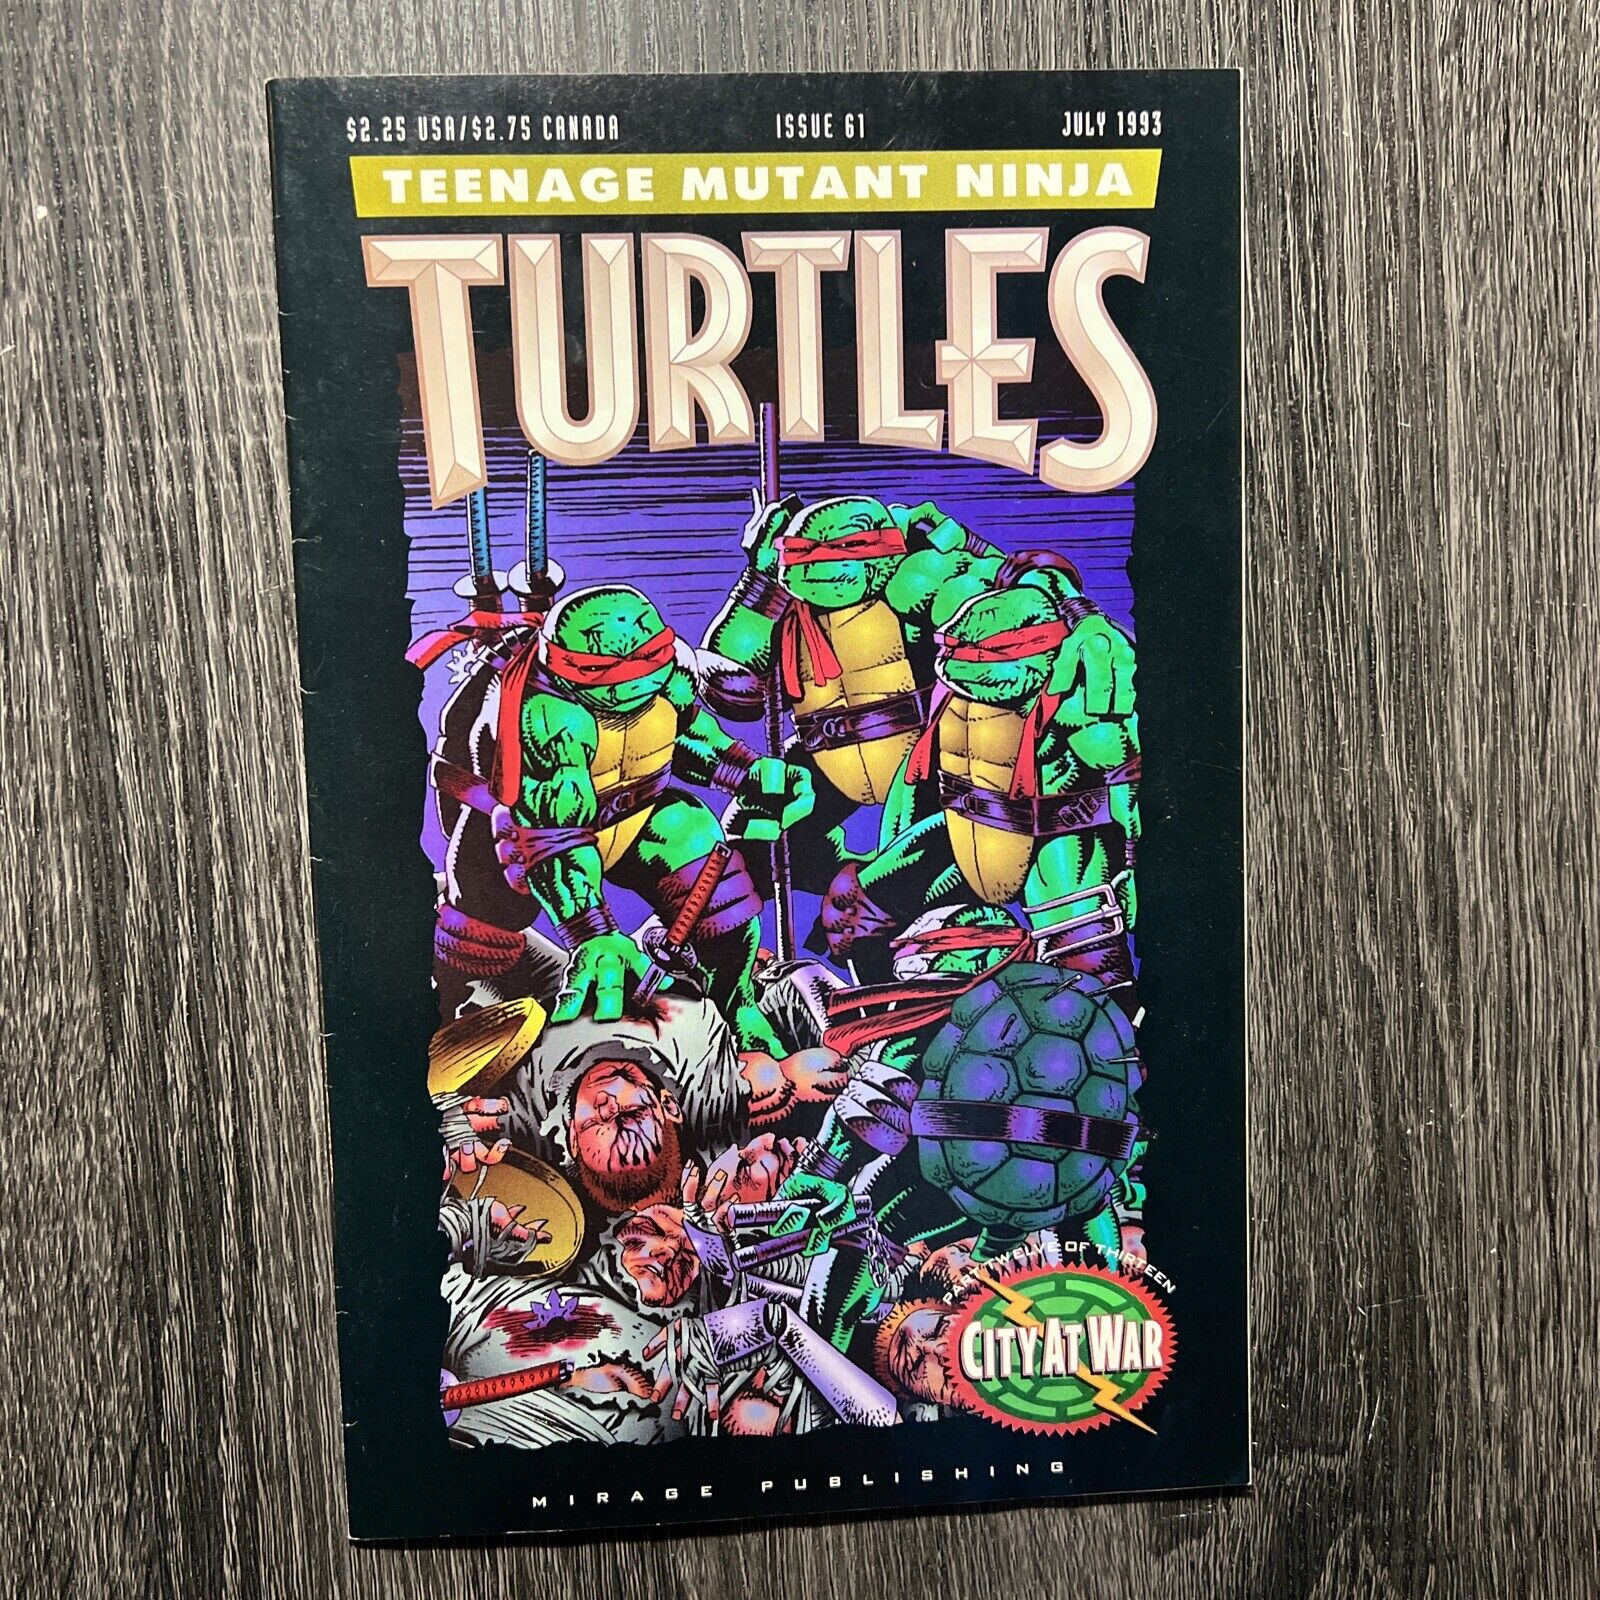 Teenage Mutant Ninja Turtles #61 1993 Mirage Studios EXCELLENT CONDITION